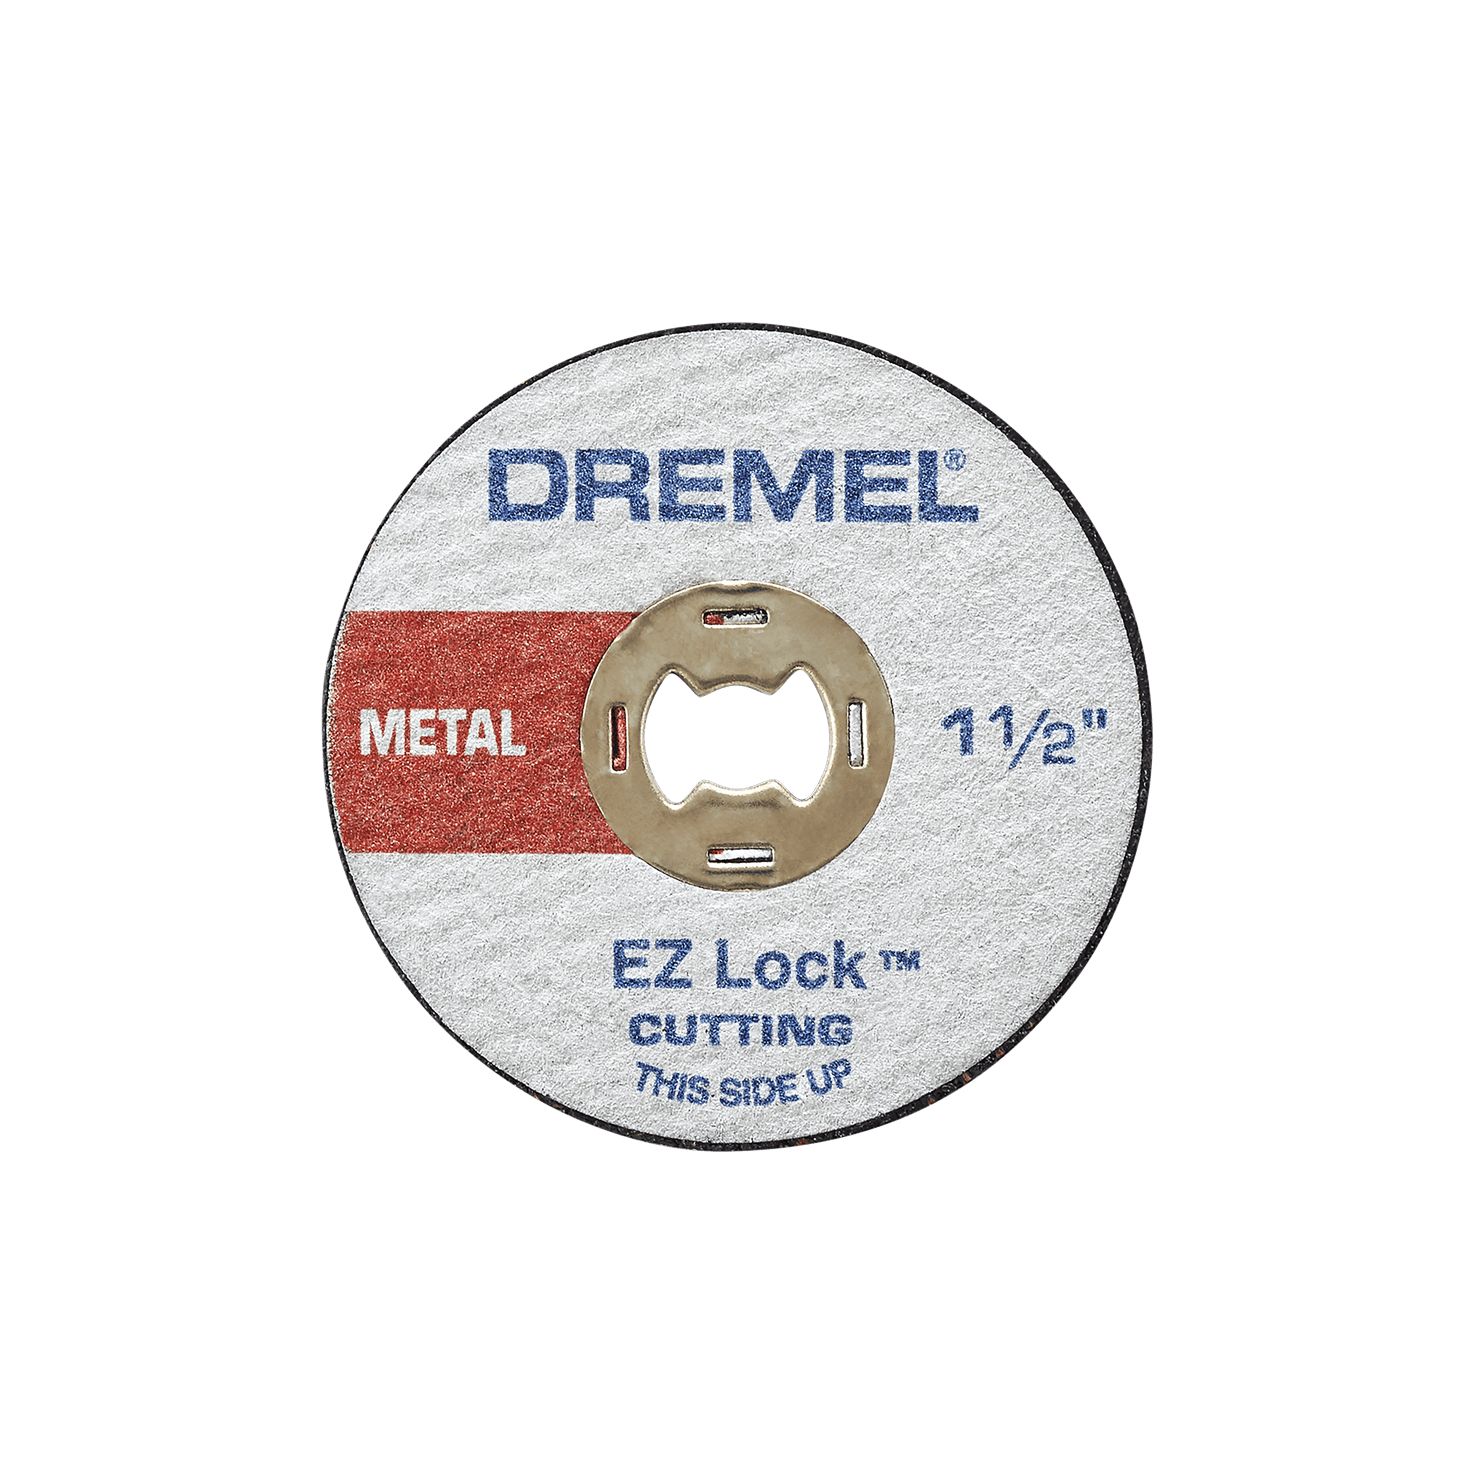 Dremel 4300-5/40, Rotary Tool Kit, 120V, 9 Inch Length